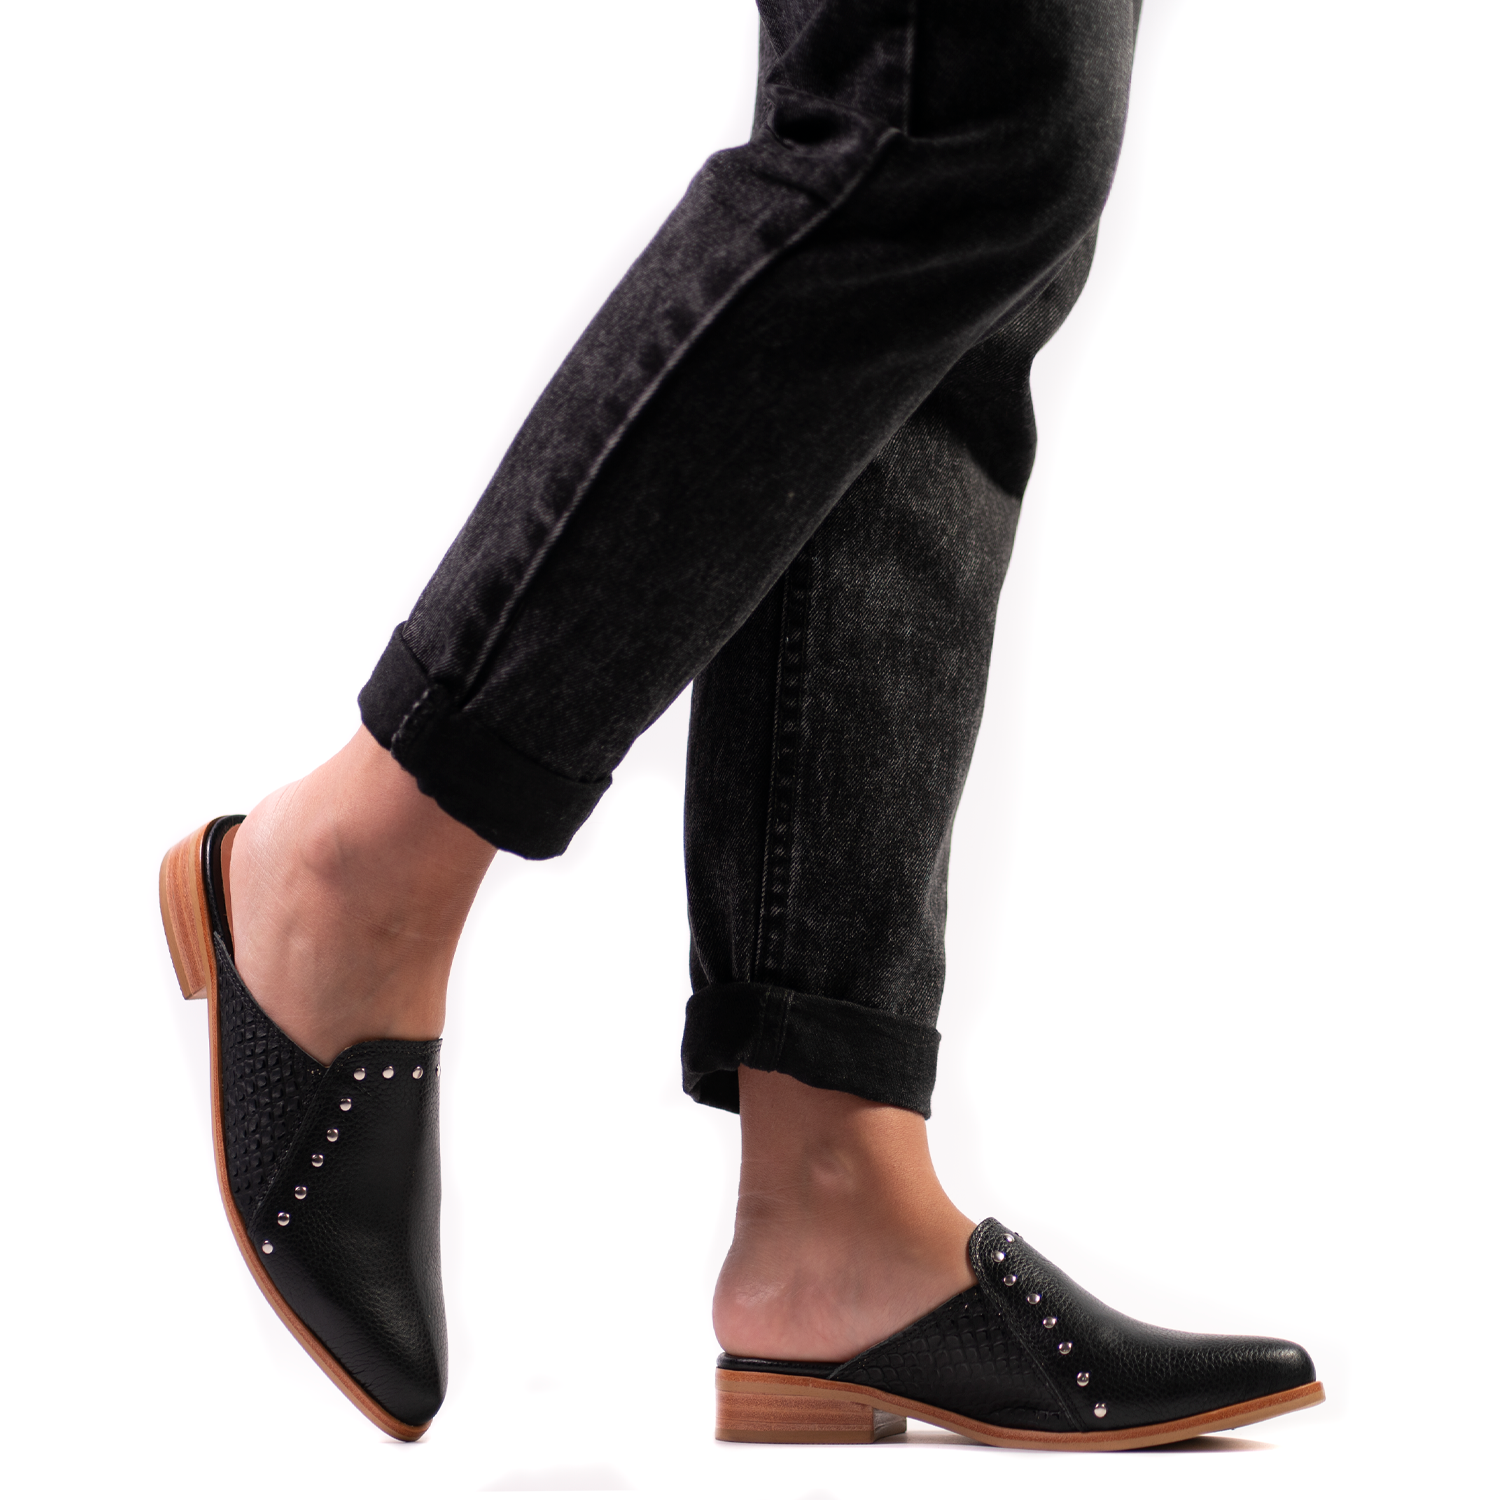 Zapatos Puntilla Mujer color negro - Calzado Cuero - Burano